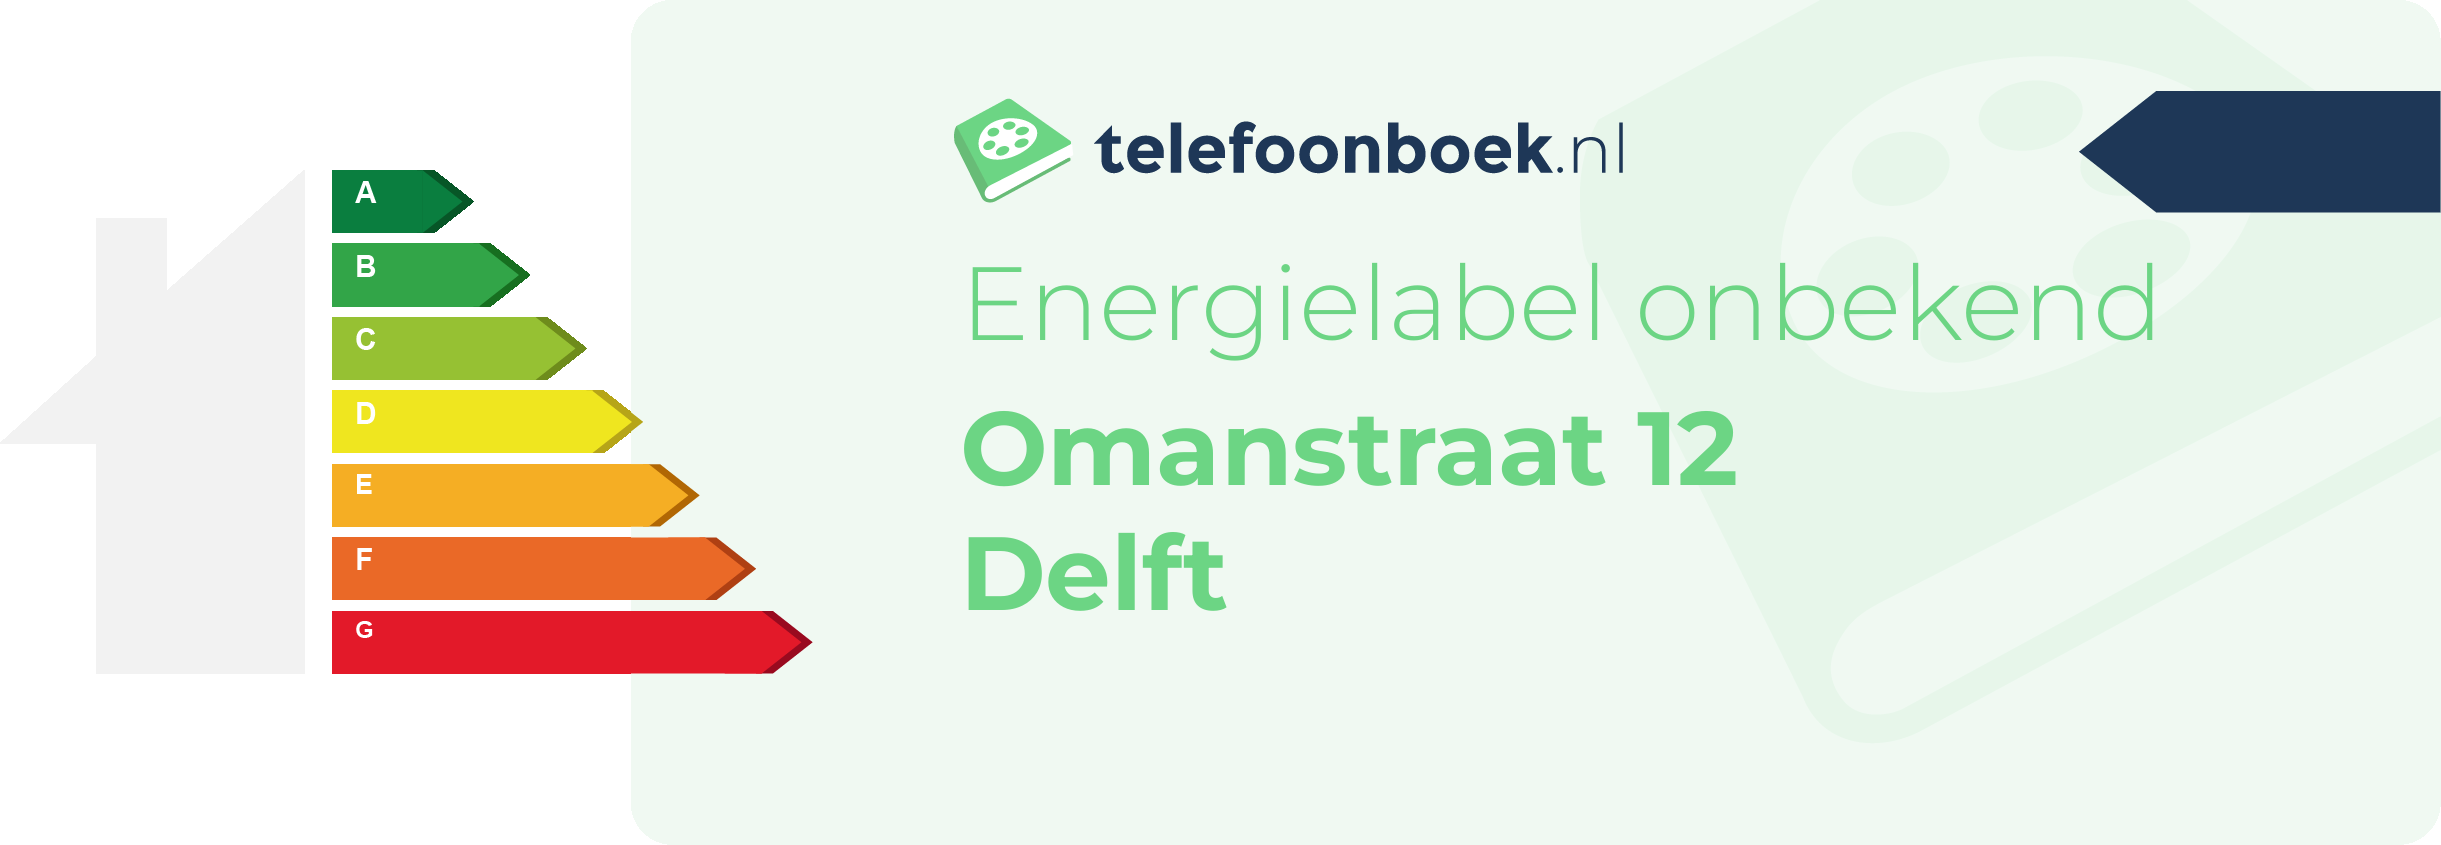 Energielabel Omanstraat 12 Delft